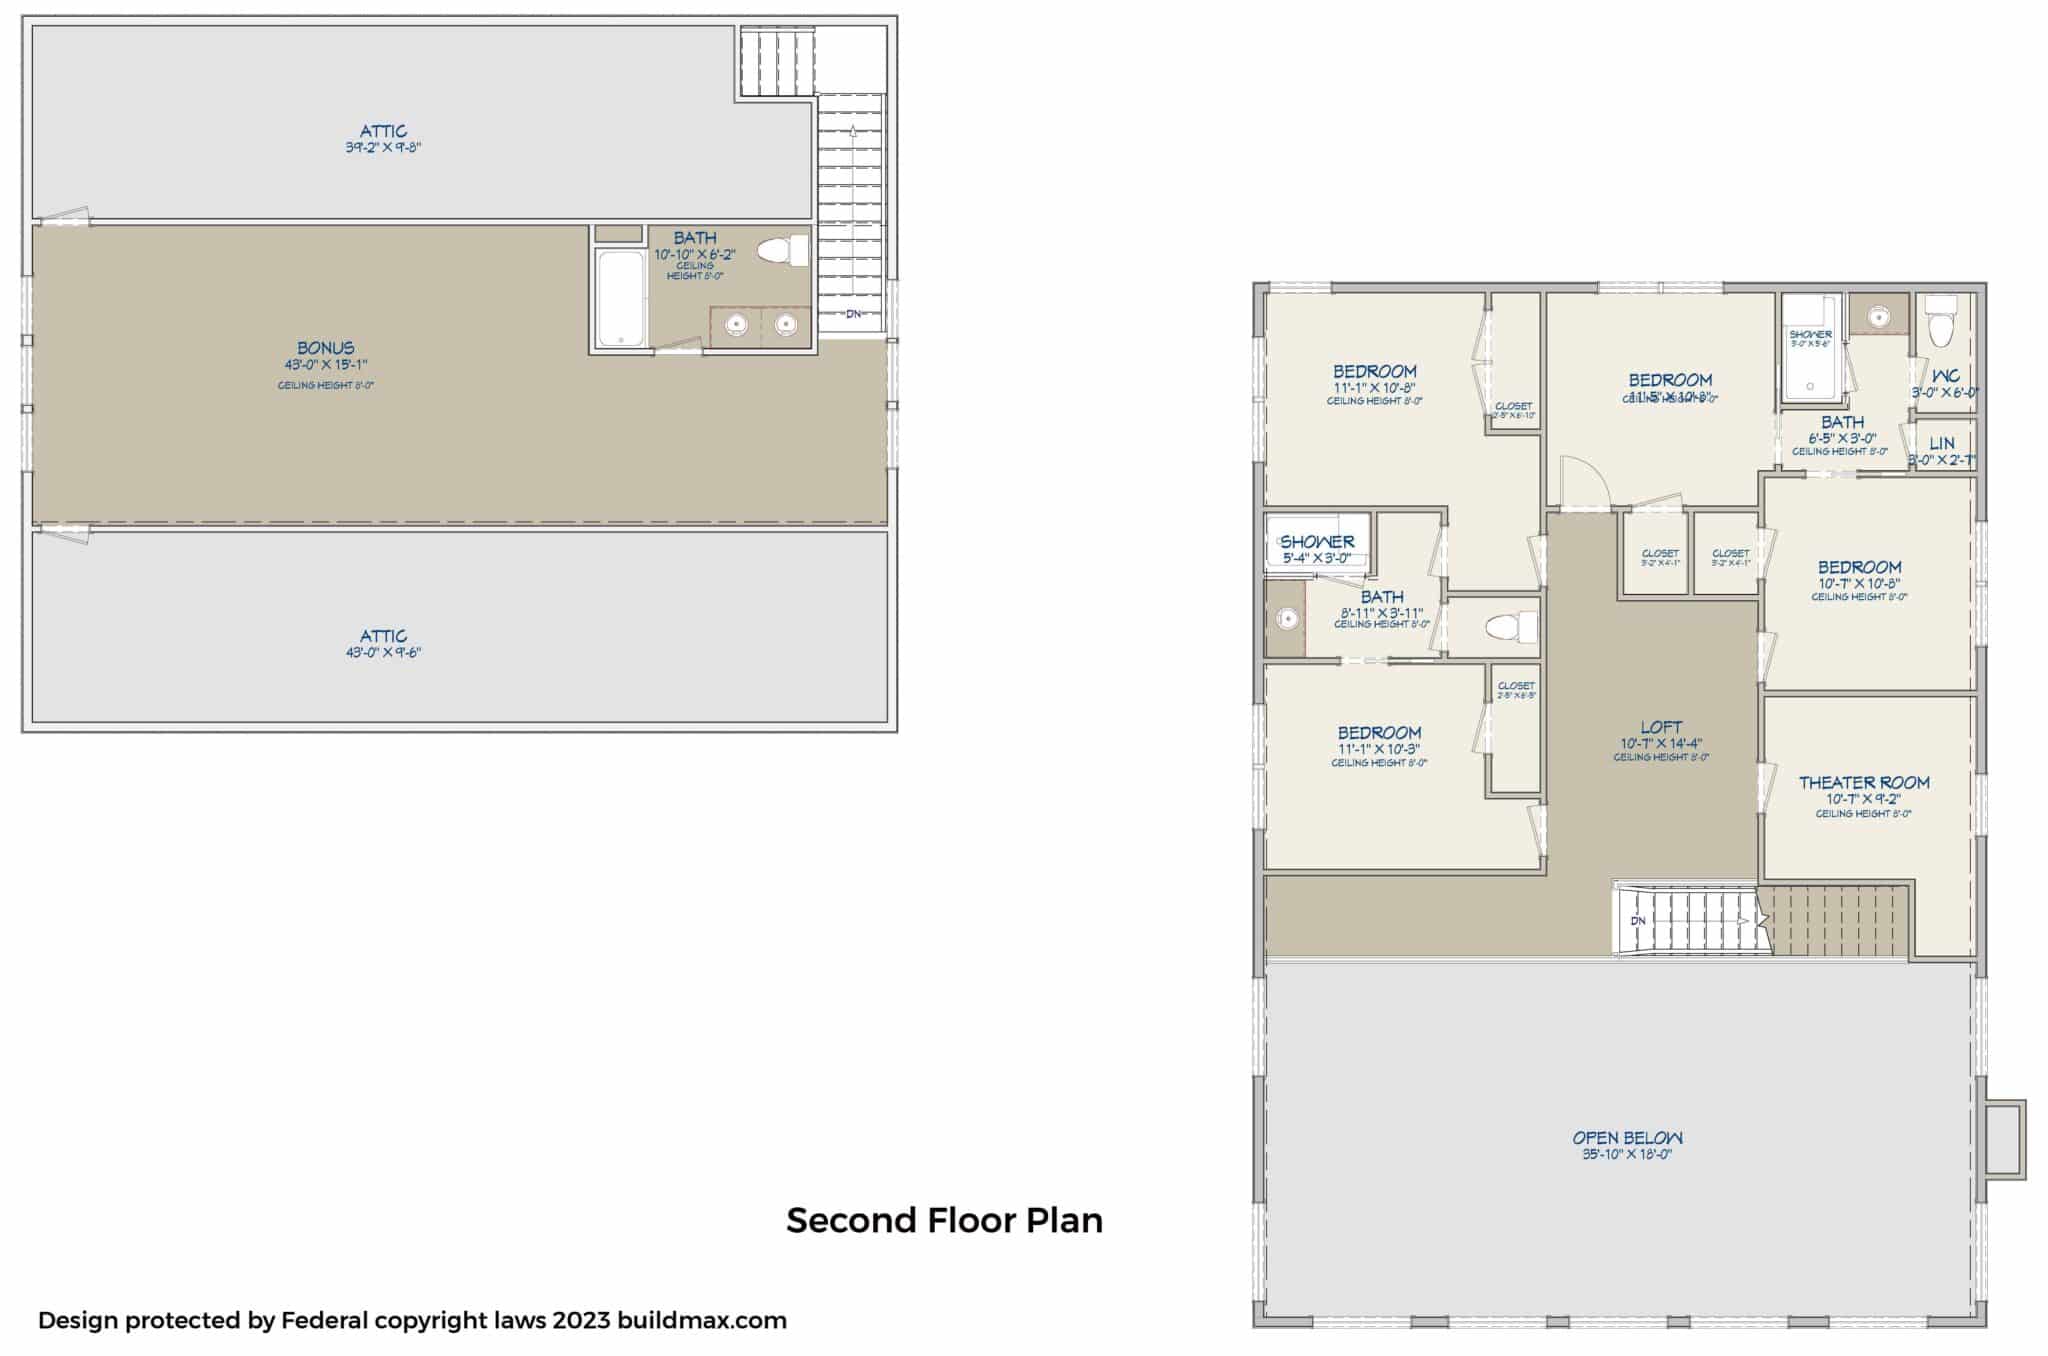 barndominium floor plan second floor layout details